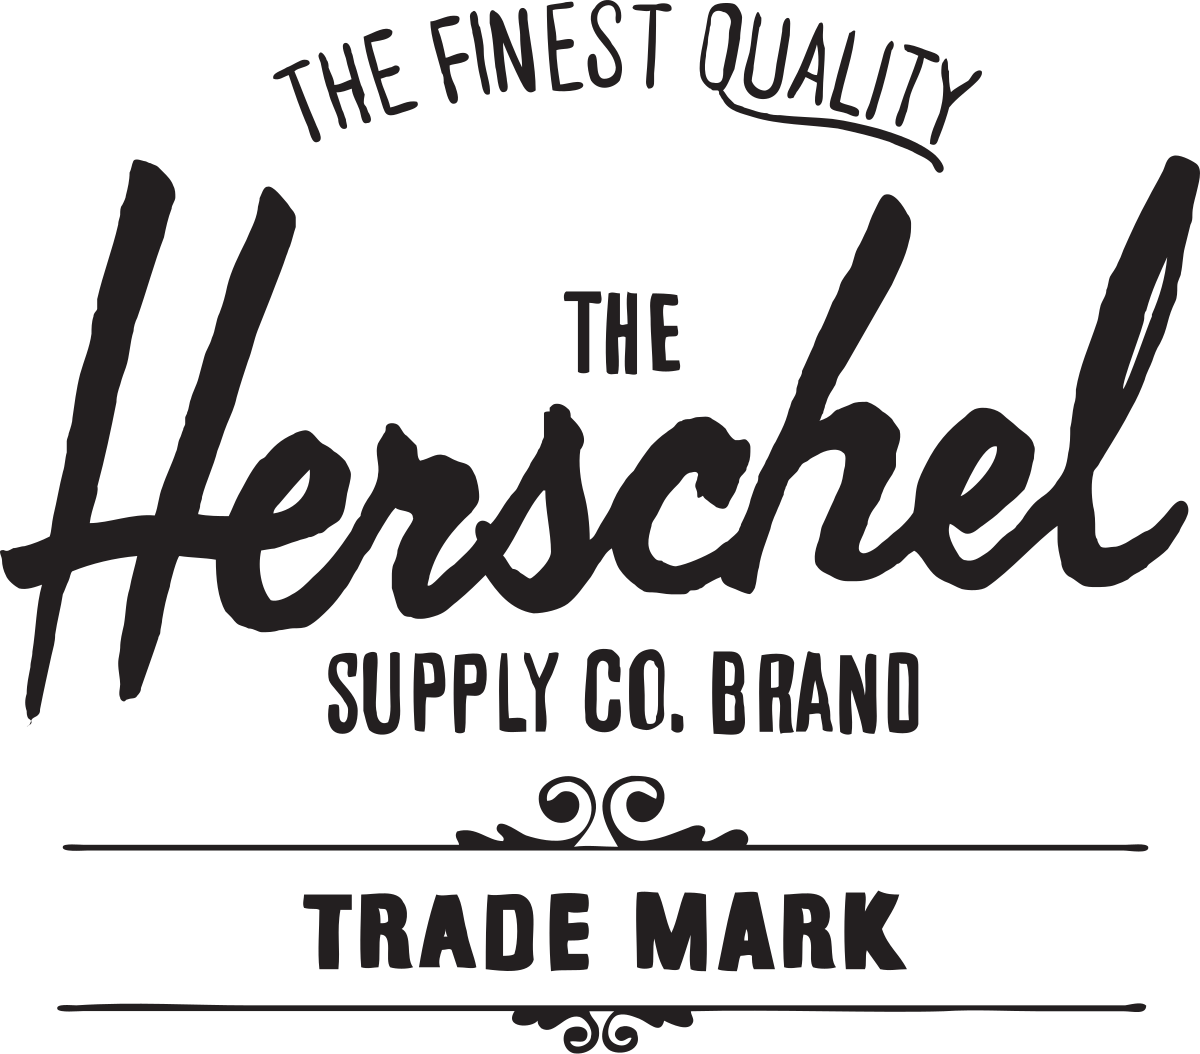 Herschel Supply Co logo